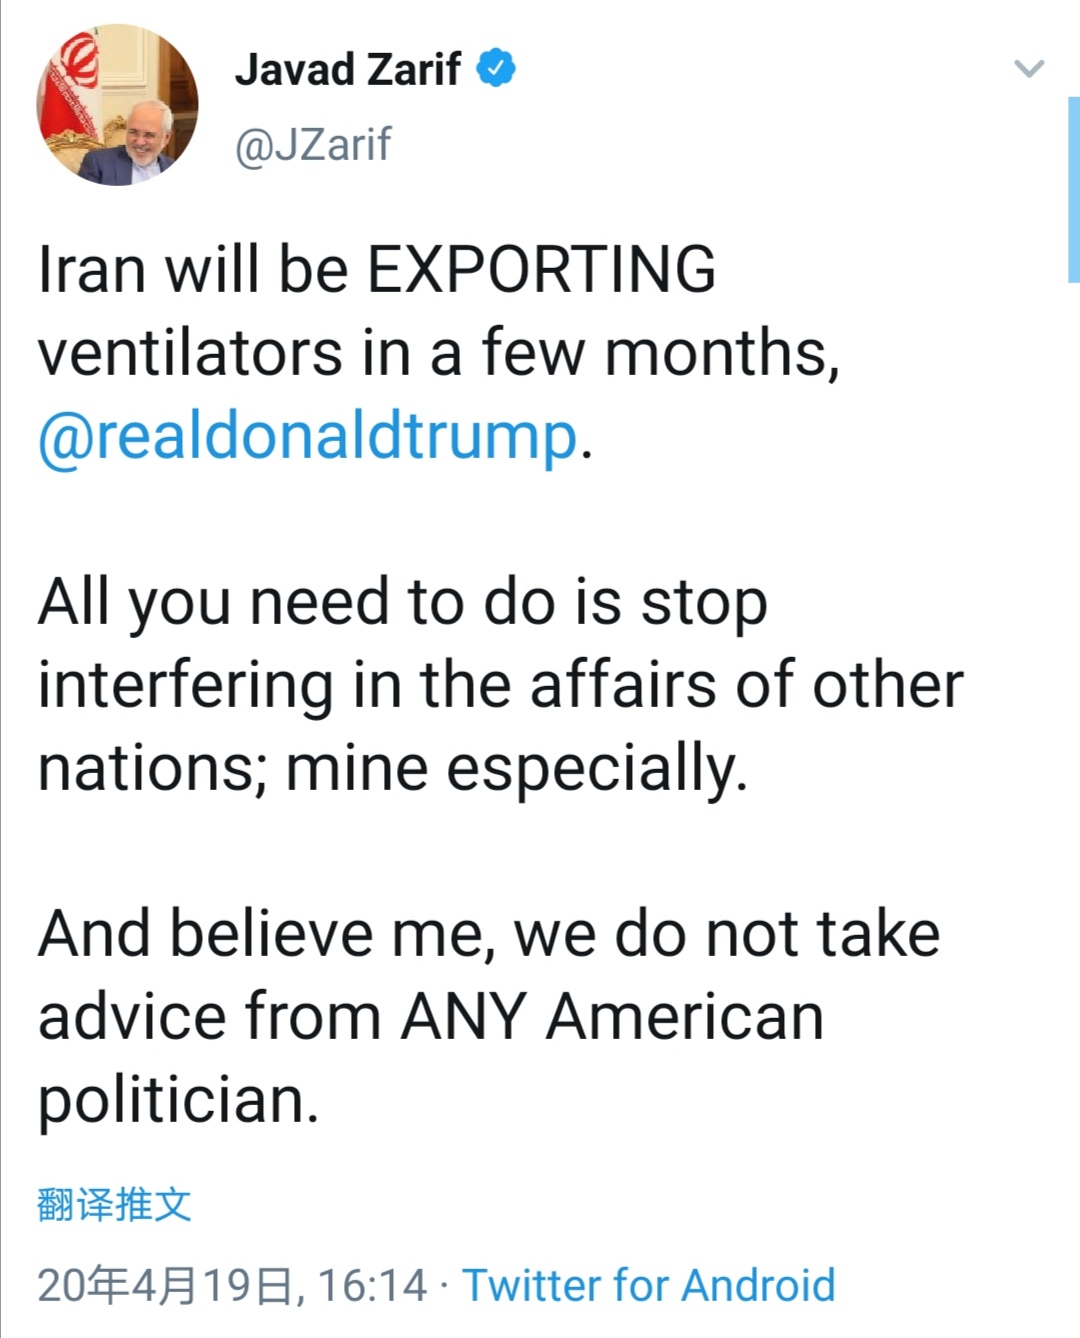 伊朗外长：将出口呼吸机 喊话美国停止干涉他国事务